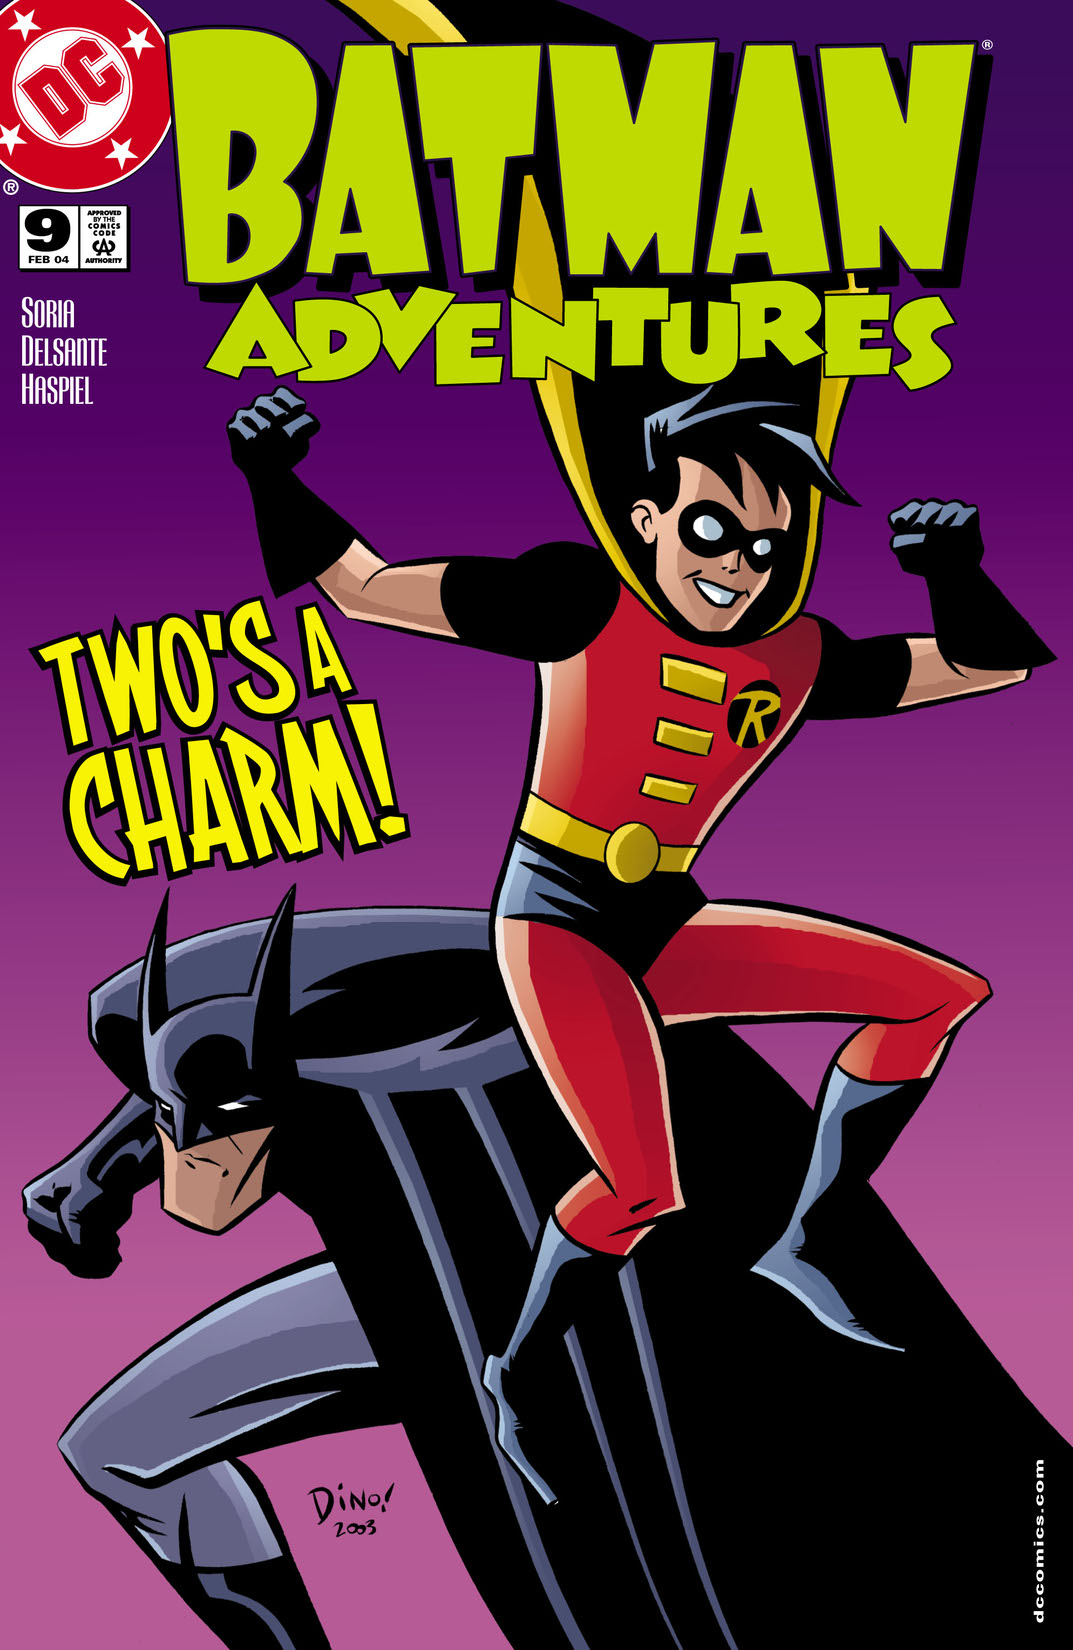 Batman Adventures #9 preview images